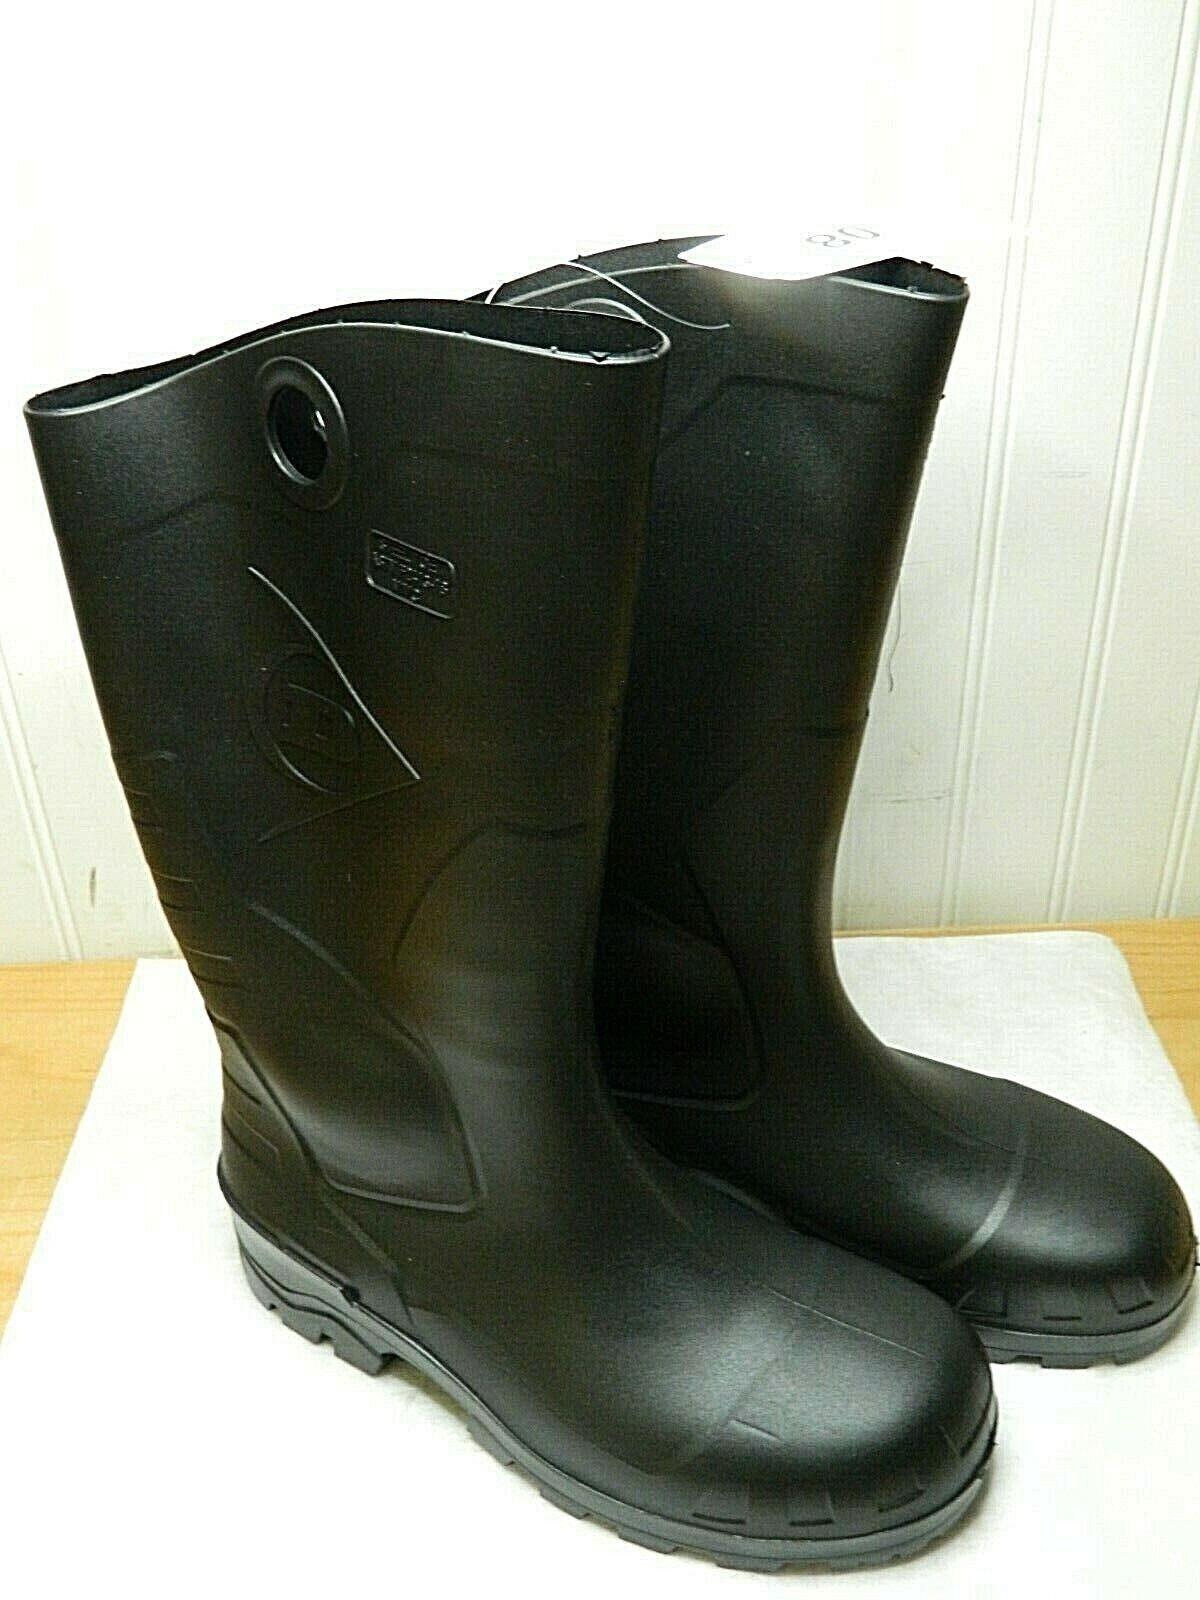 Dunlop Protective Footwear Men's Size 8 Steel Toe PVC Work Boot